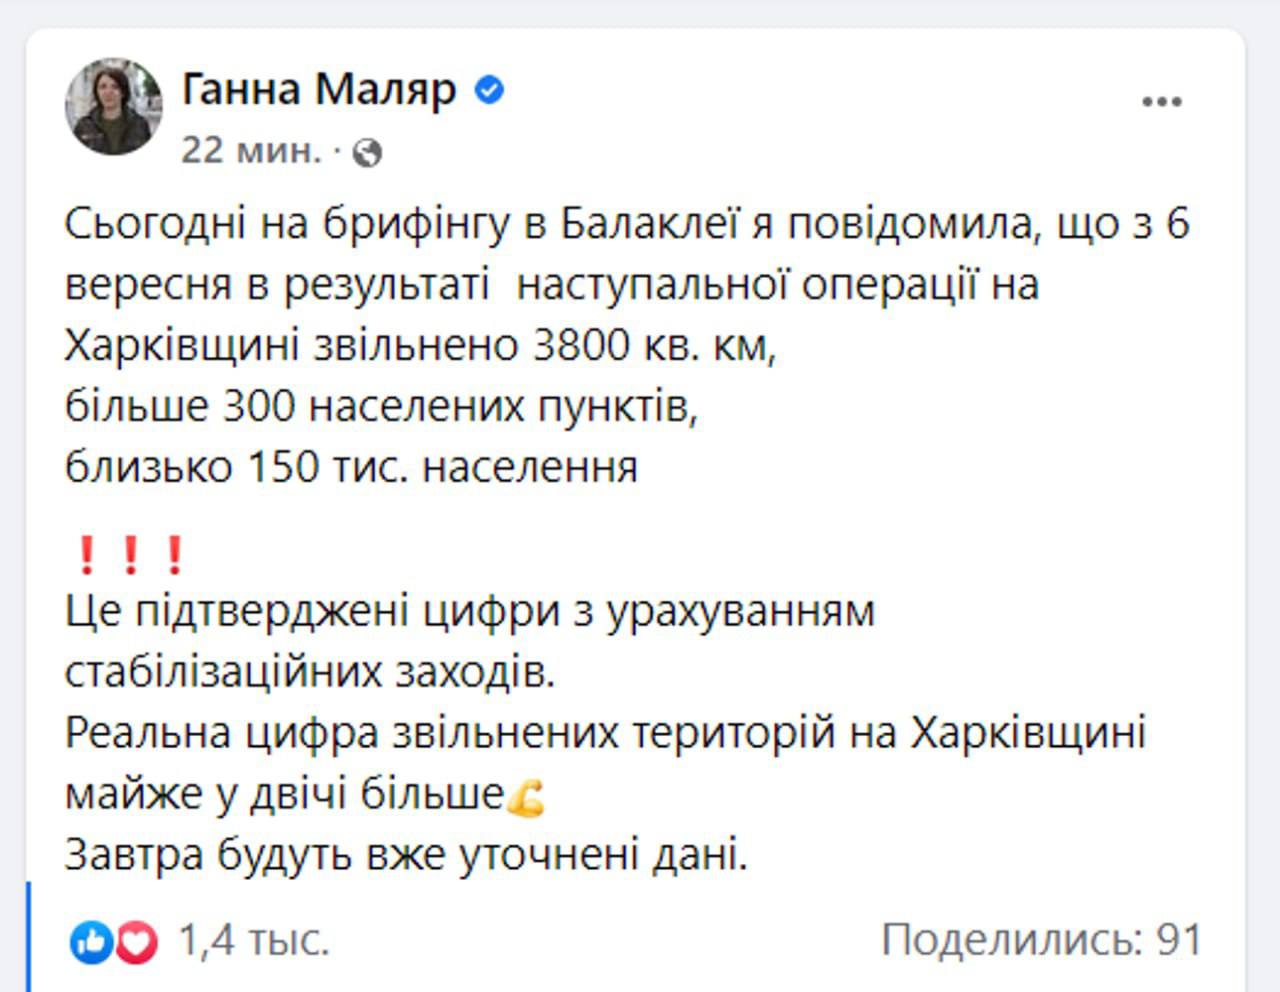 💪🇺🇦 Реальное количество освобожденных территорий в Харьковской области почти вдвое больше озвученных, заявила замминистра обороны Маляр